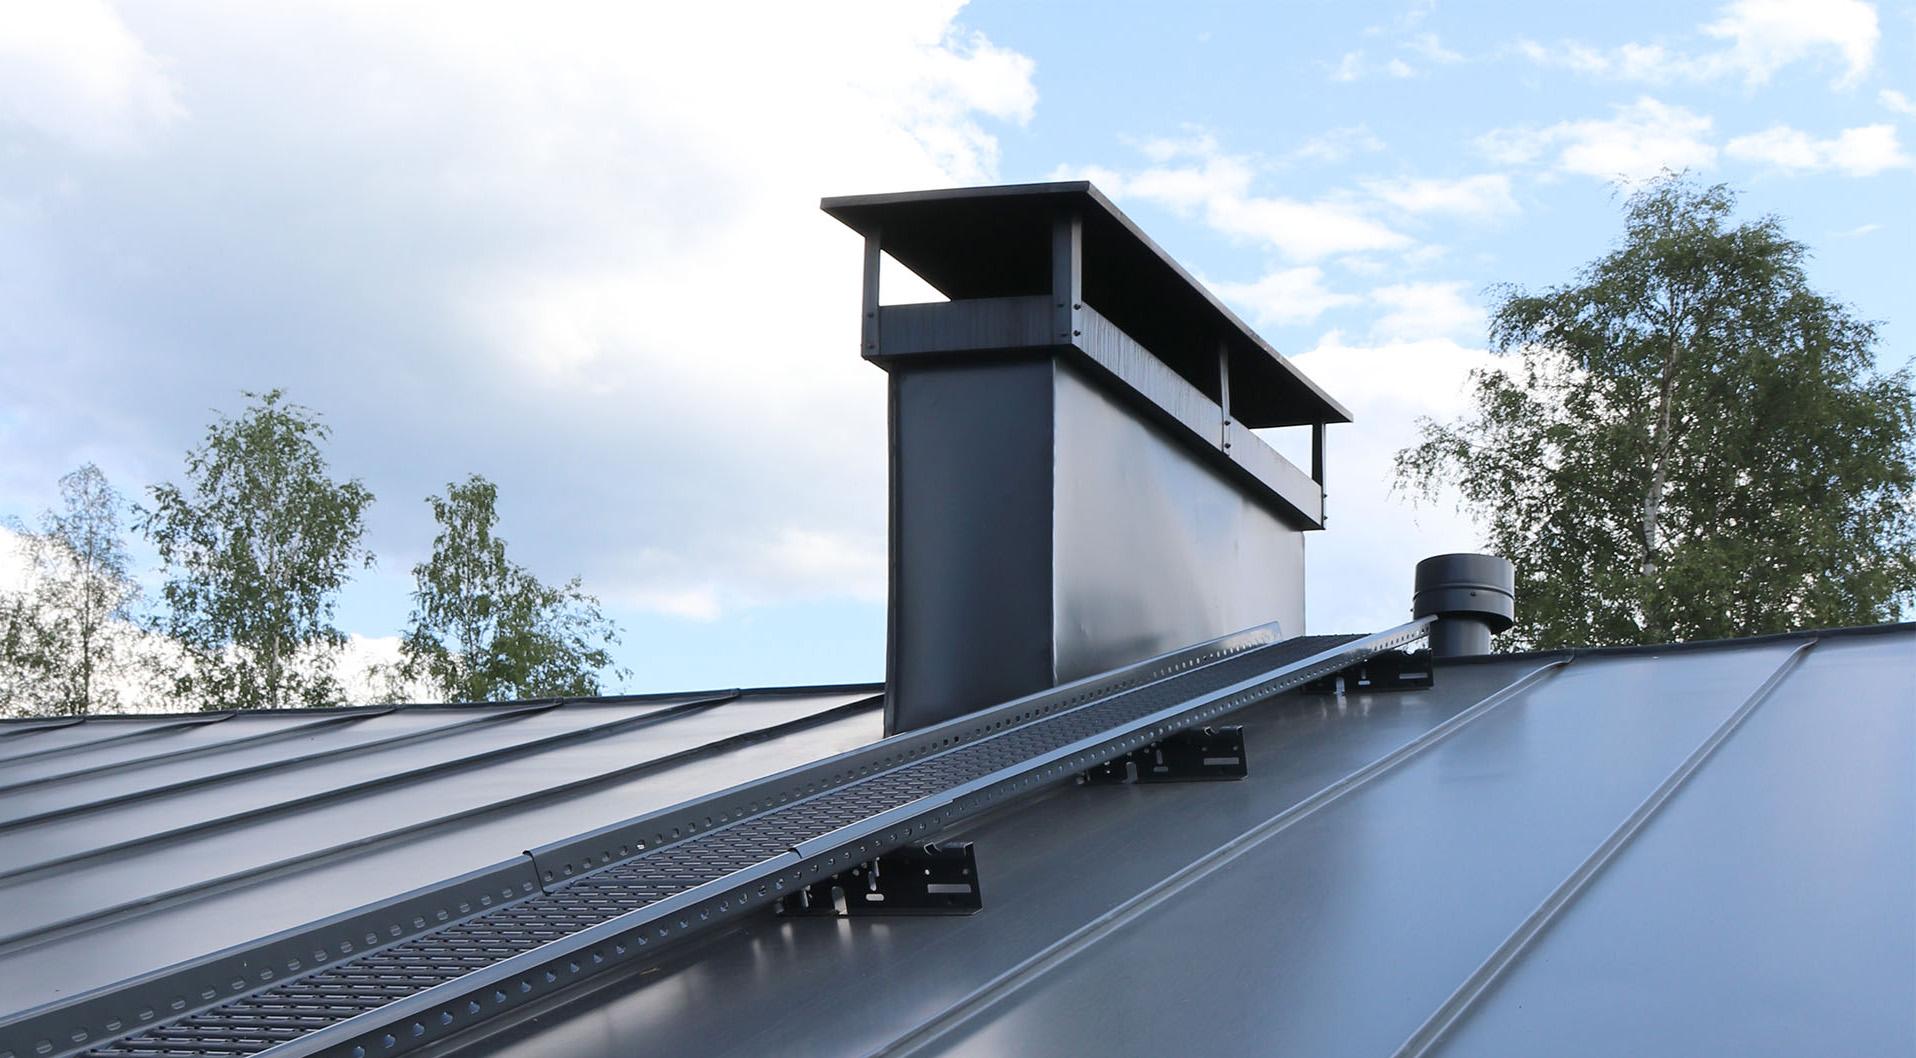 Kaltevuuden suuntainen kattosilta on käyttäjäystävällinen ja turvallinen vaihtoehto kattotikkaille loivilla katoilla.